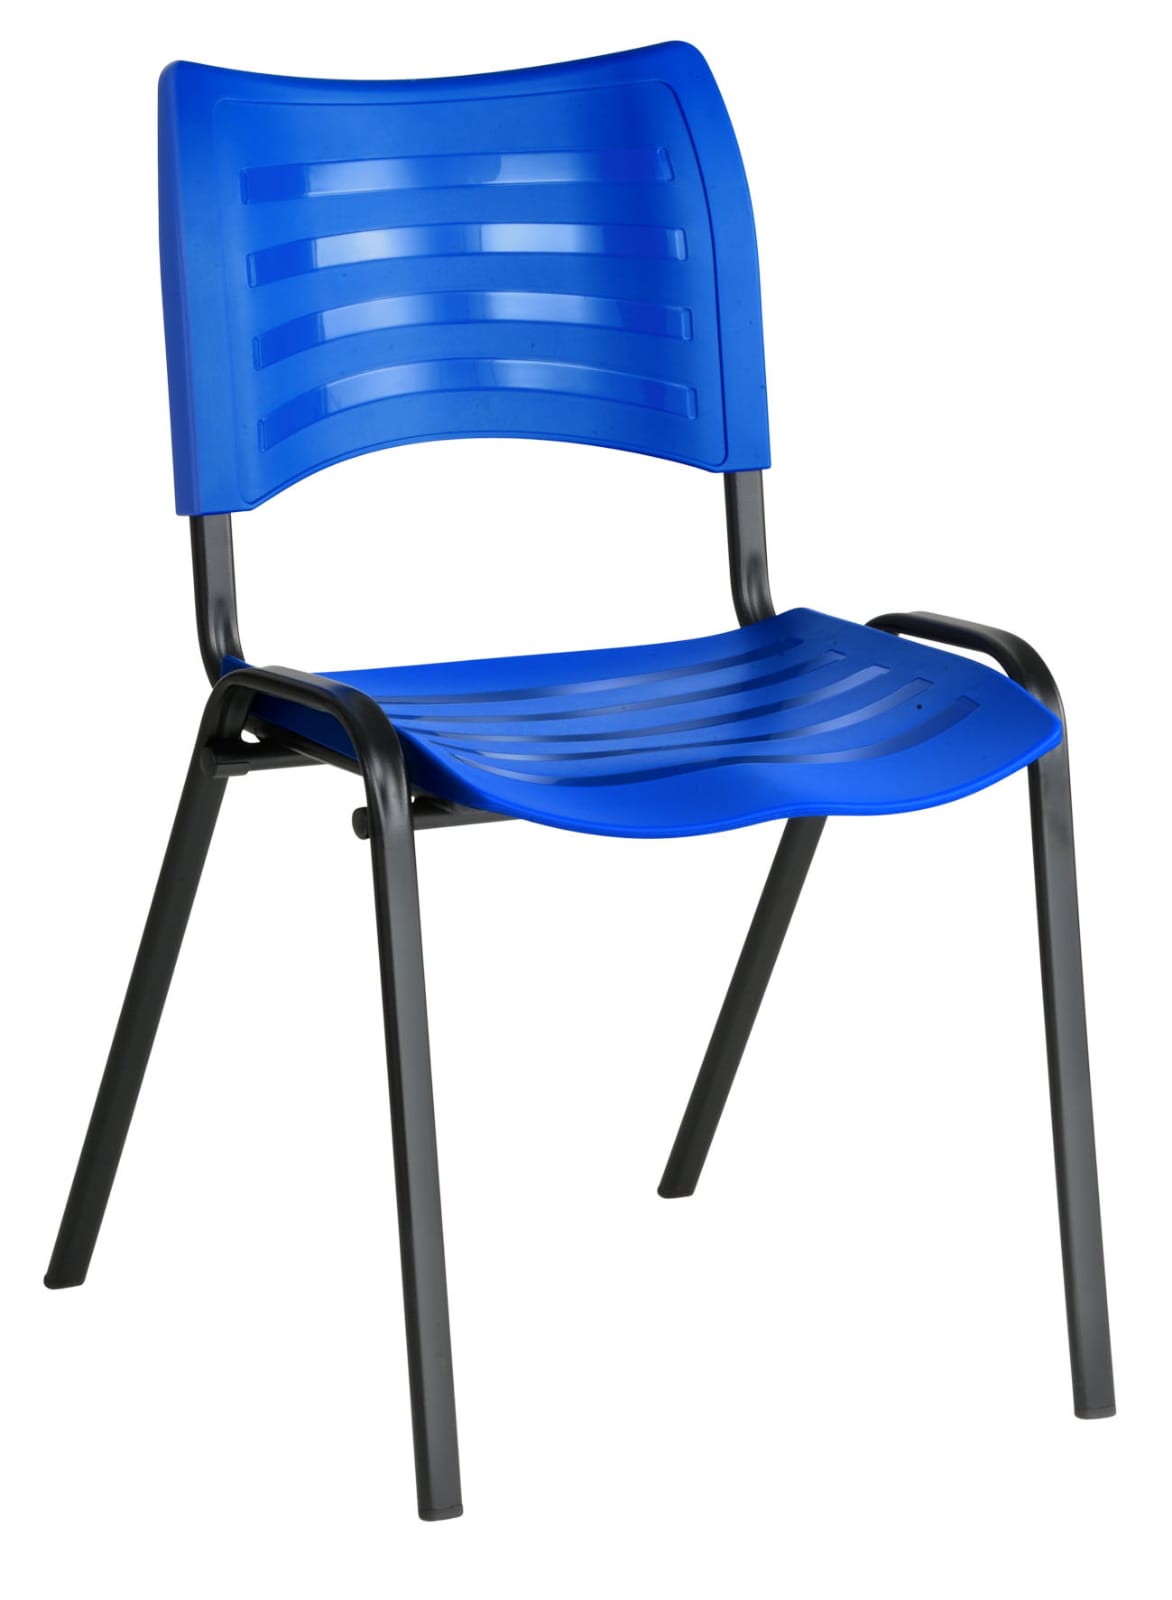  Cadeira para Refeitório Isoflex Empilhável - Diversas Cores